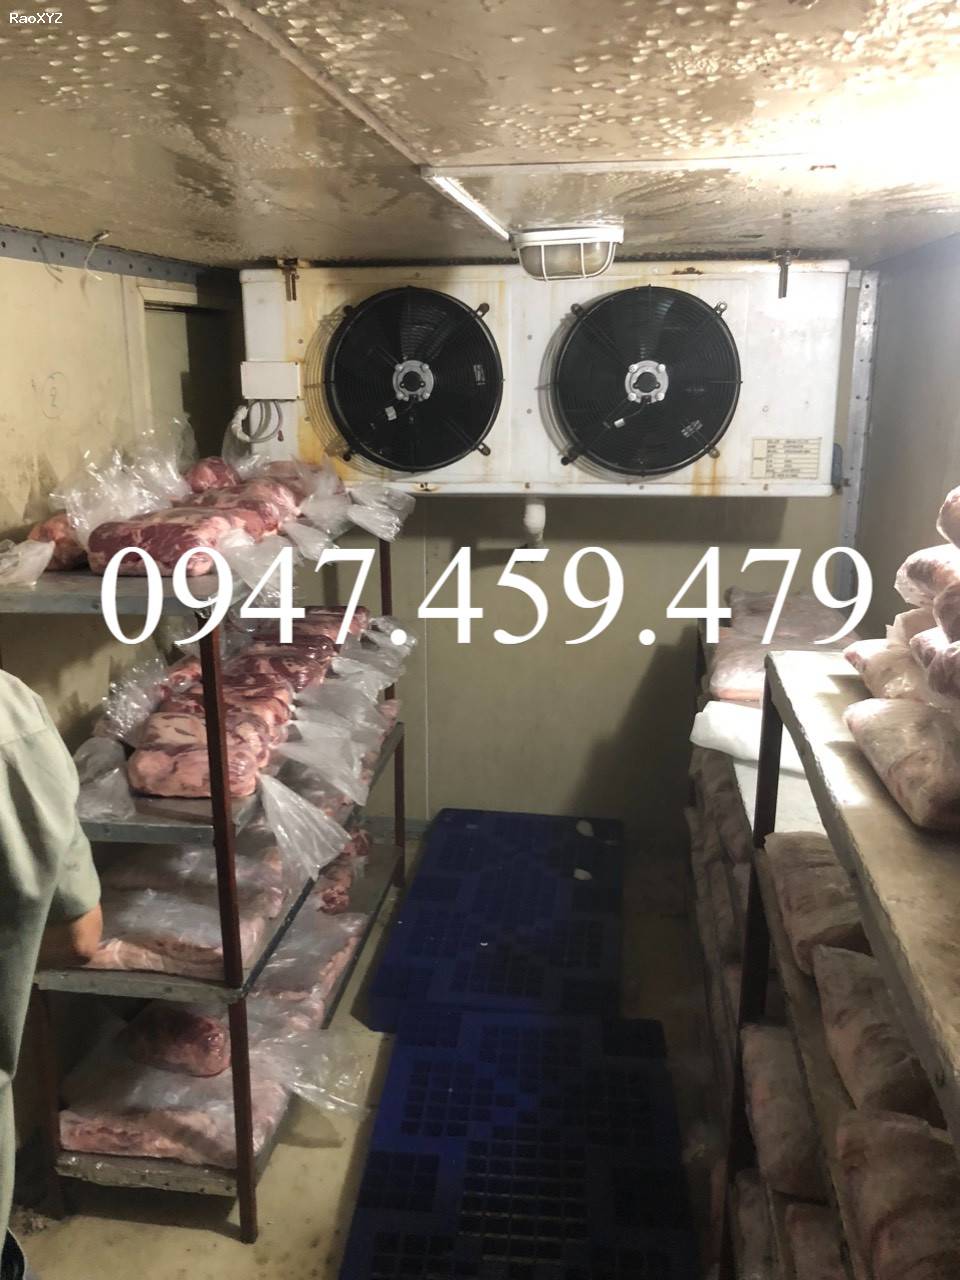 Cung cấp kho lạnh trữ thịt bò Tại Phan Thiết (0947 459 479), Lắp đặt kho lạnh tại Phan Thiết